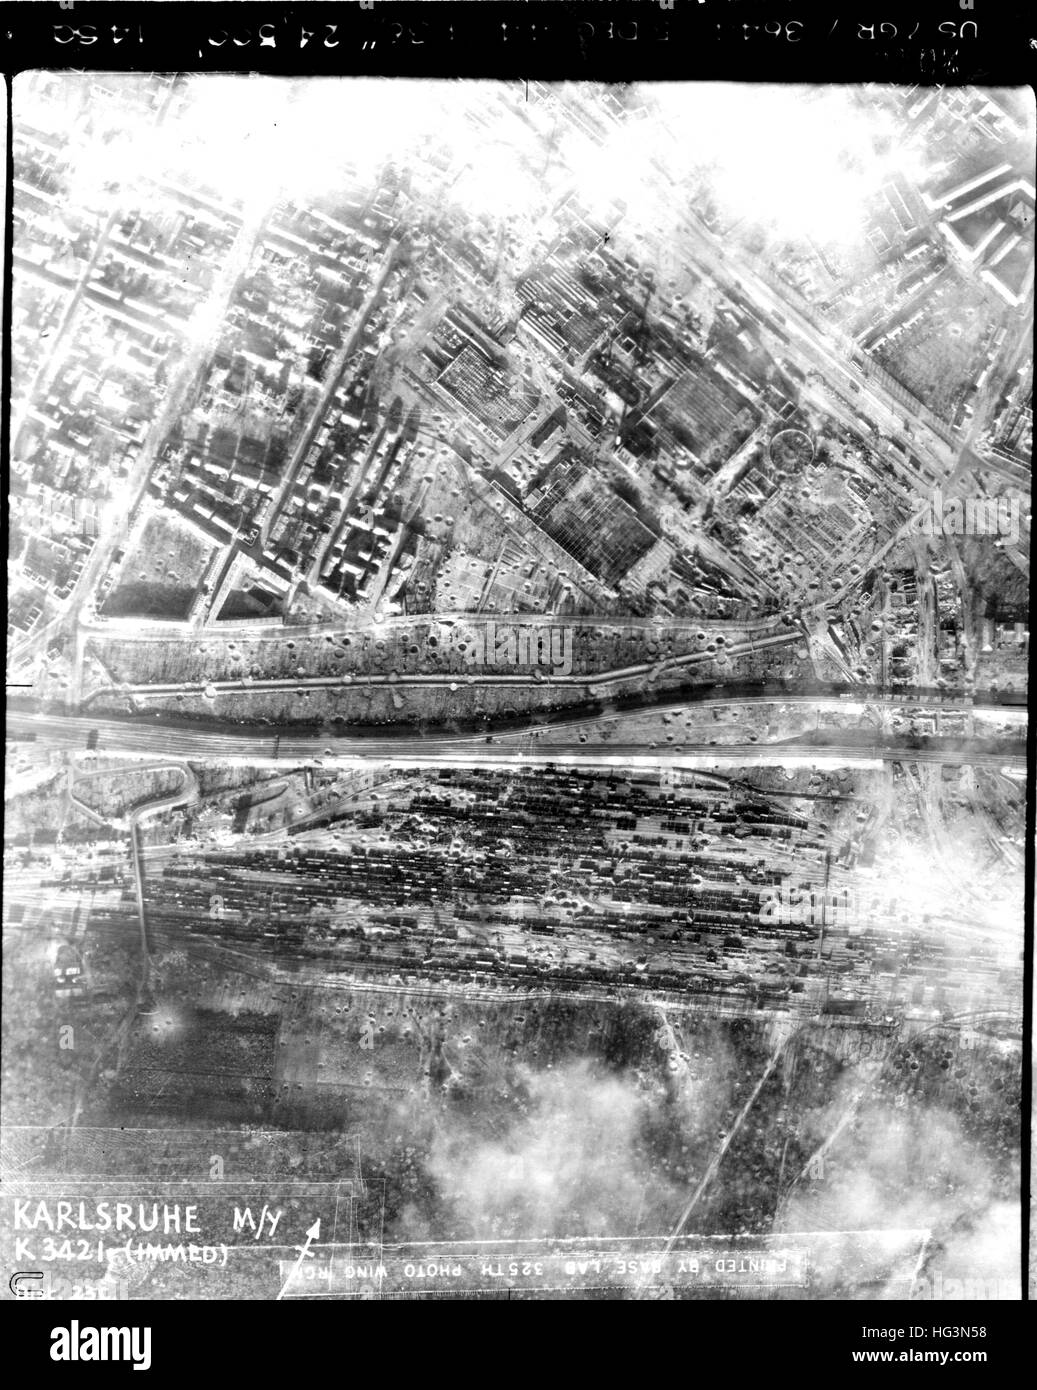 KARLSRUHE, Deutschland. Aufklärung-Foto von einer Spitfire von 542 Squadron RAF am 5. Dezember 1944 zeigt umfangreiche Bombe Beschädigung Gegend rund um den Hauptbahnhof in der unteren Hälfte des Bildes. Stockfoto